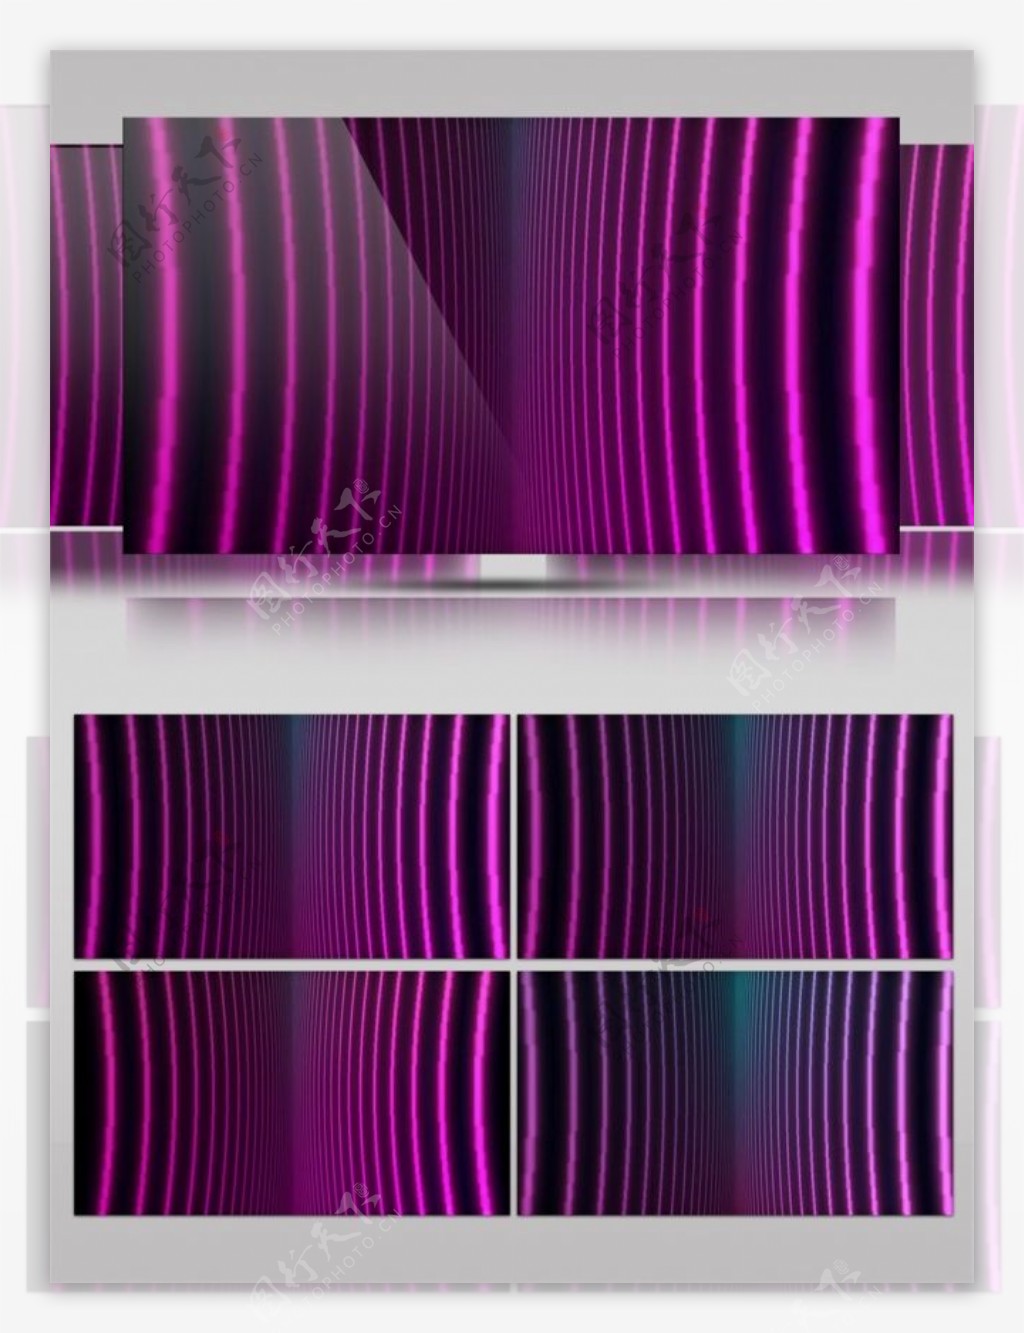 紫色弯曲光束动态视频素材